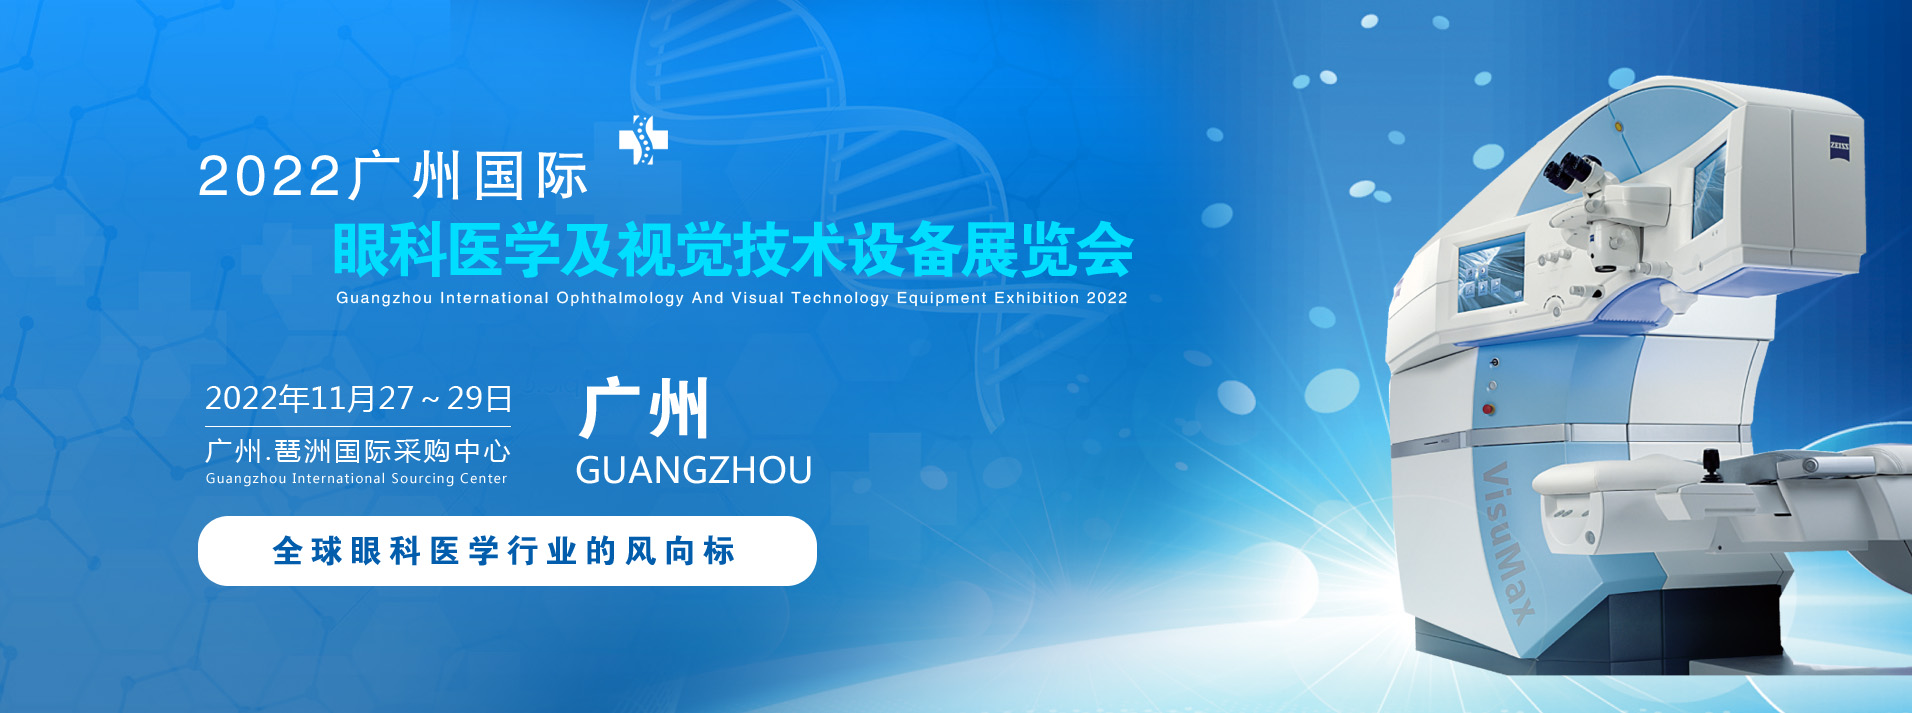 2022广州国际眼科医学展览会|2022广州视觉技术设备展览会(www.828i.com)